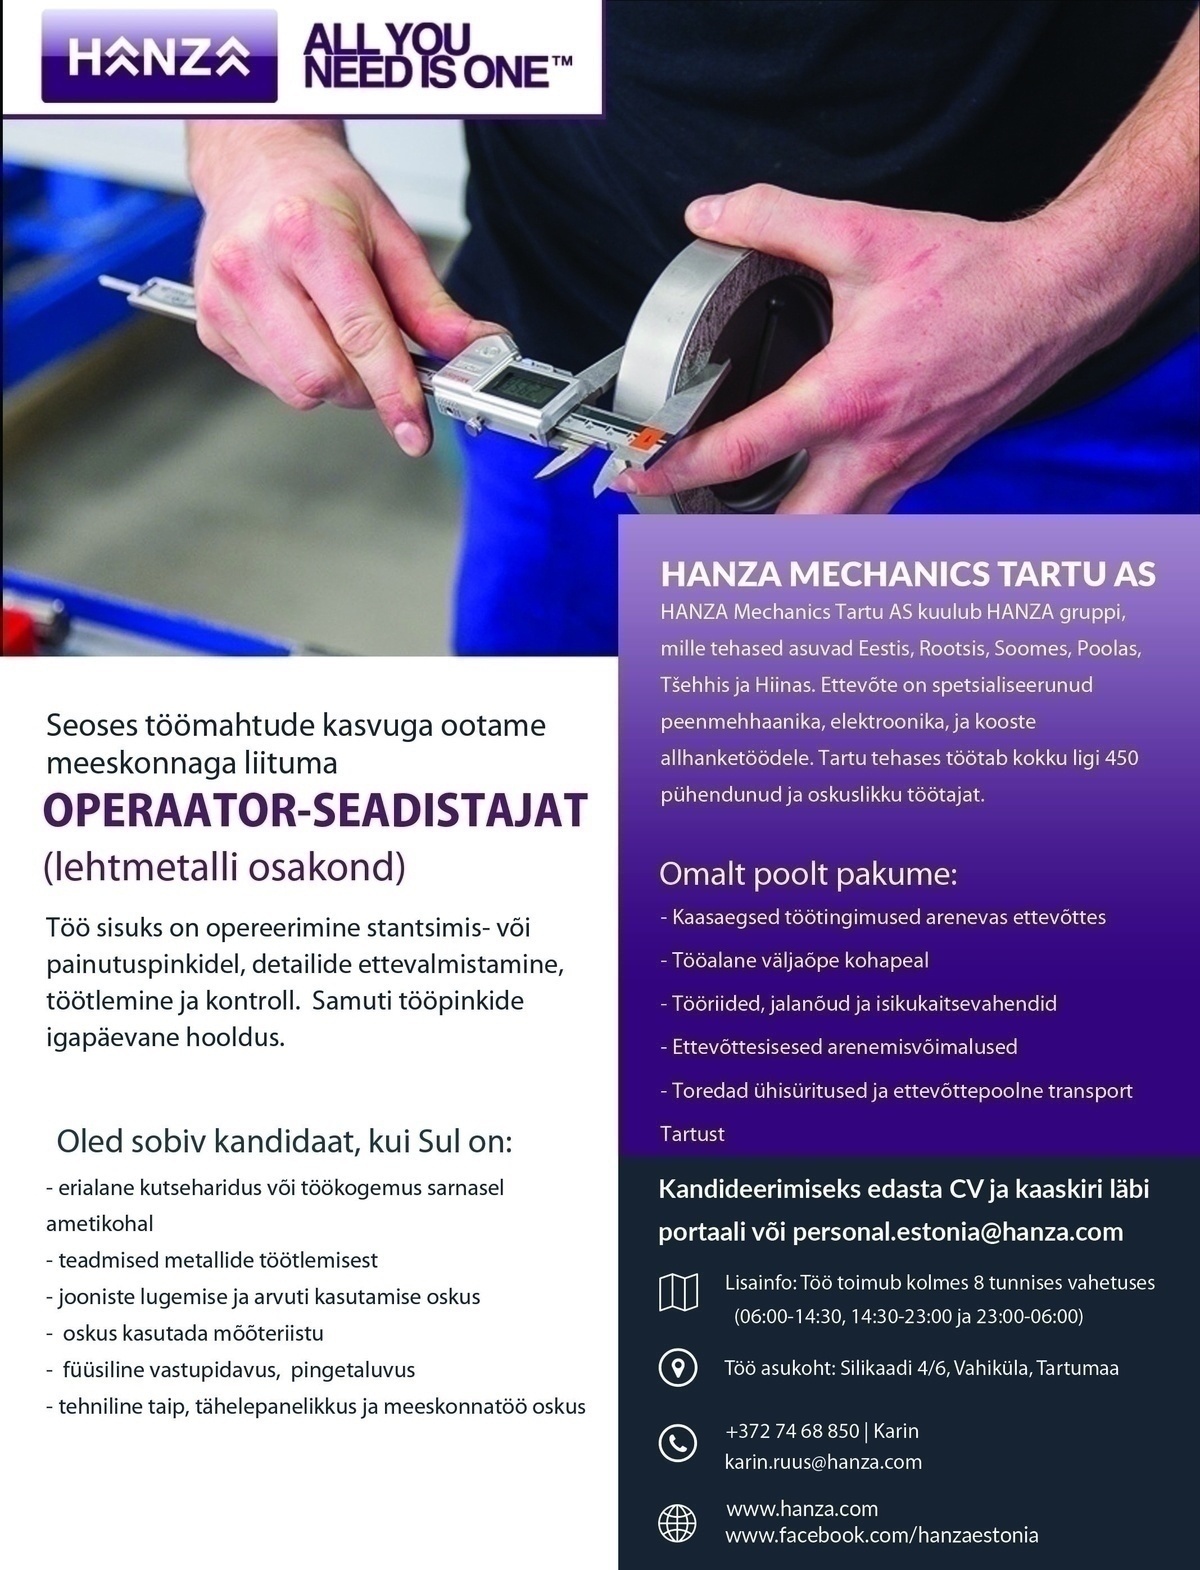 HANZA Mechanics Tartu AS Operaator -seadistaja lehetöötluses